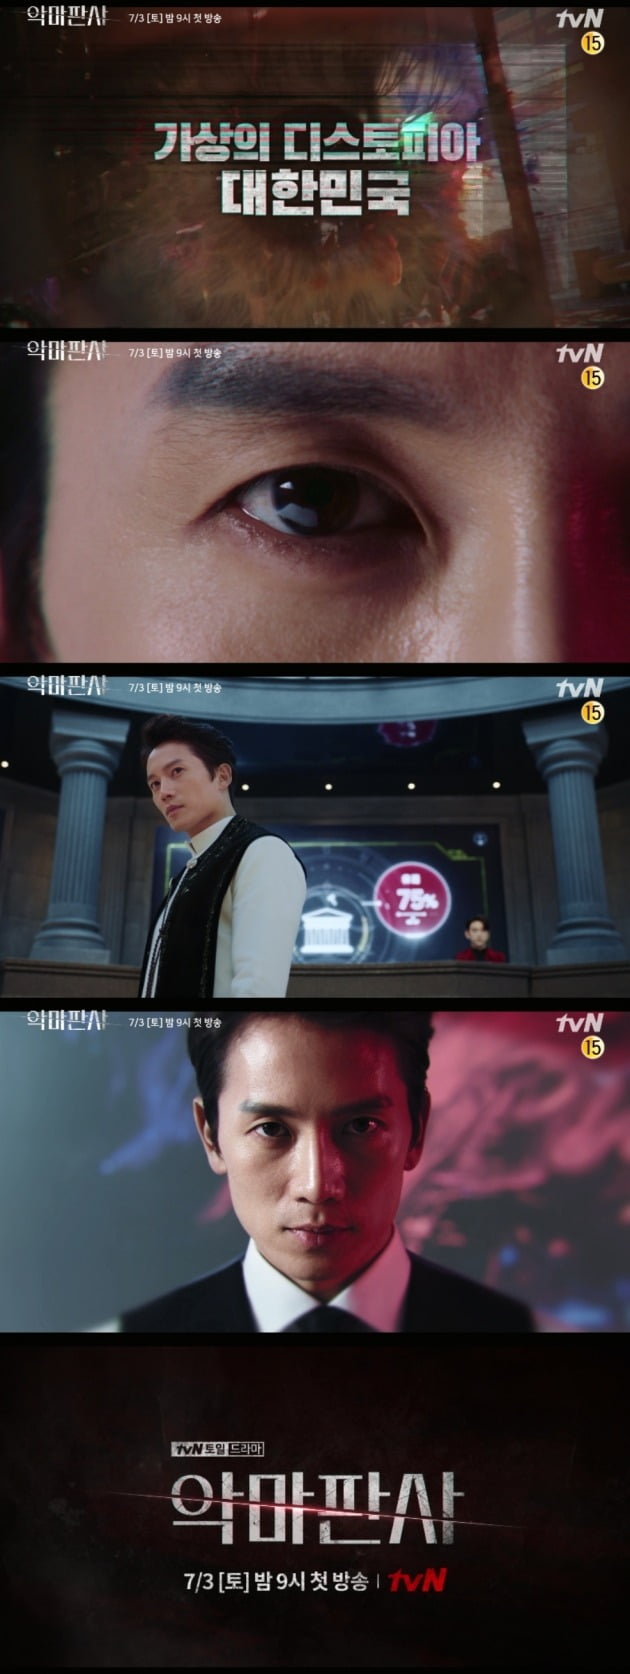 '악마판사' 티저 영상./사진제공=tvN